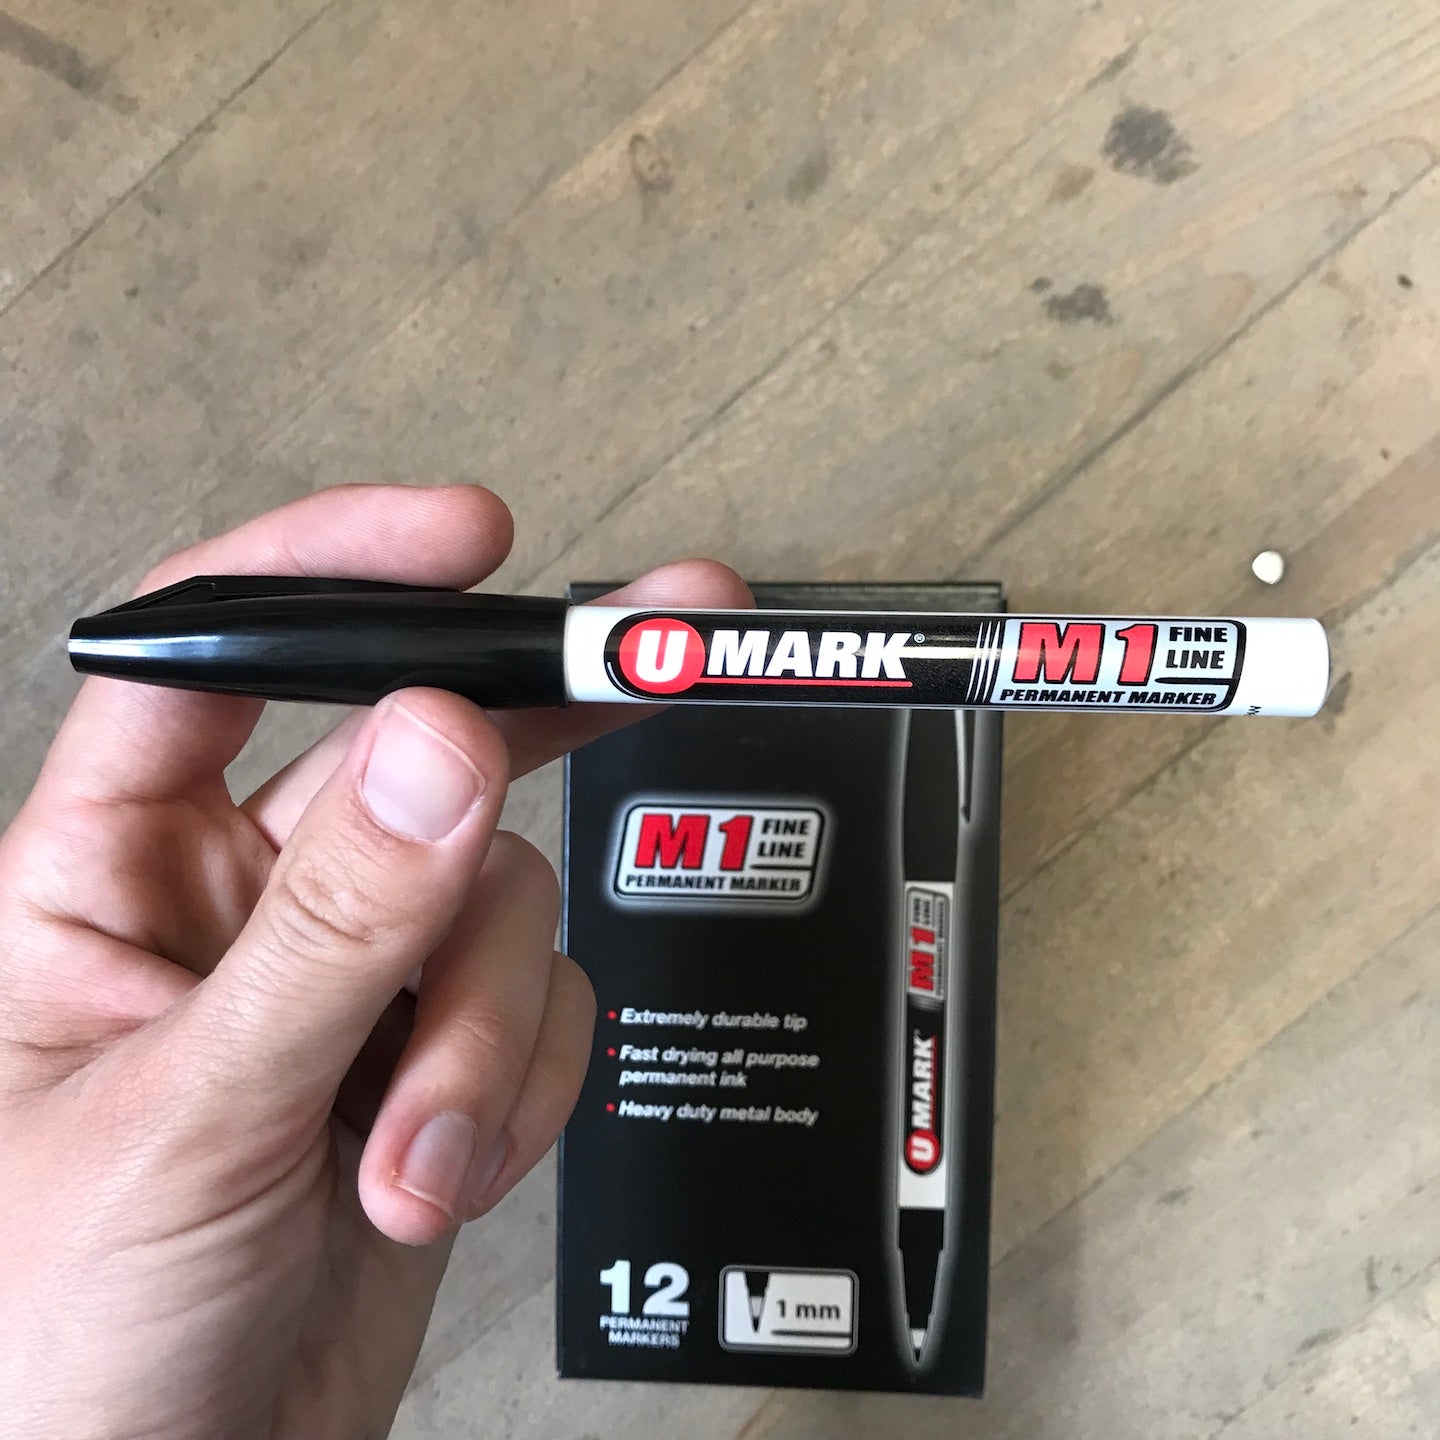 U Mark 1 Dozen Fine Line Black Permanent Markers M1 (10581)